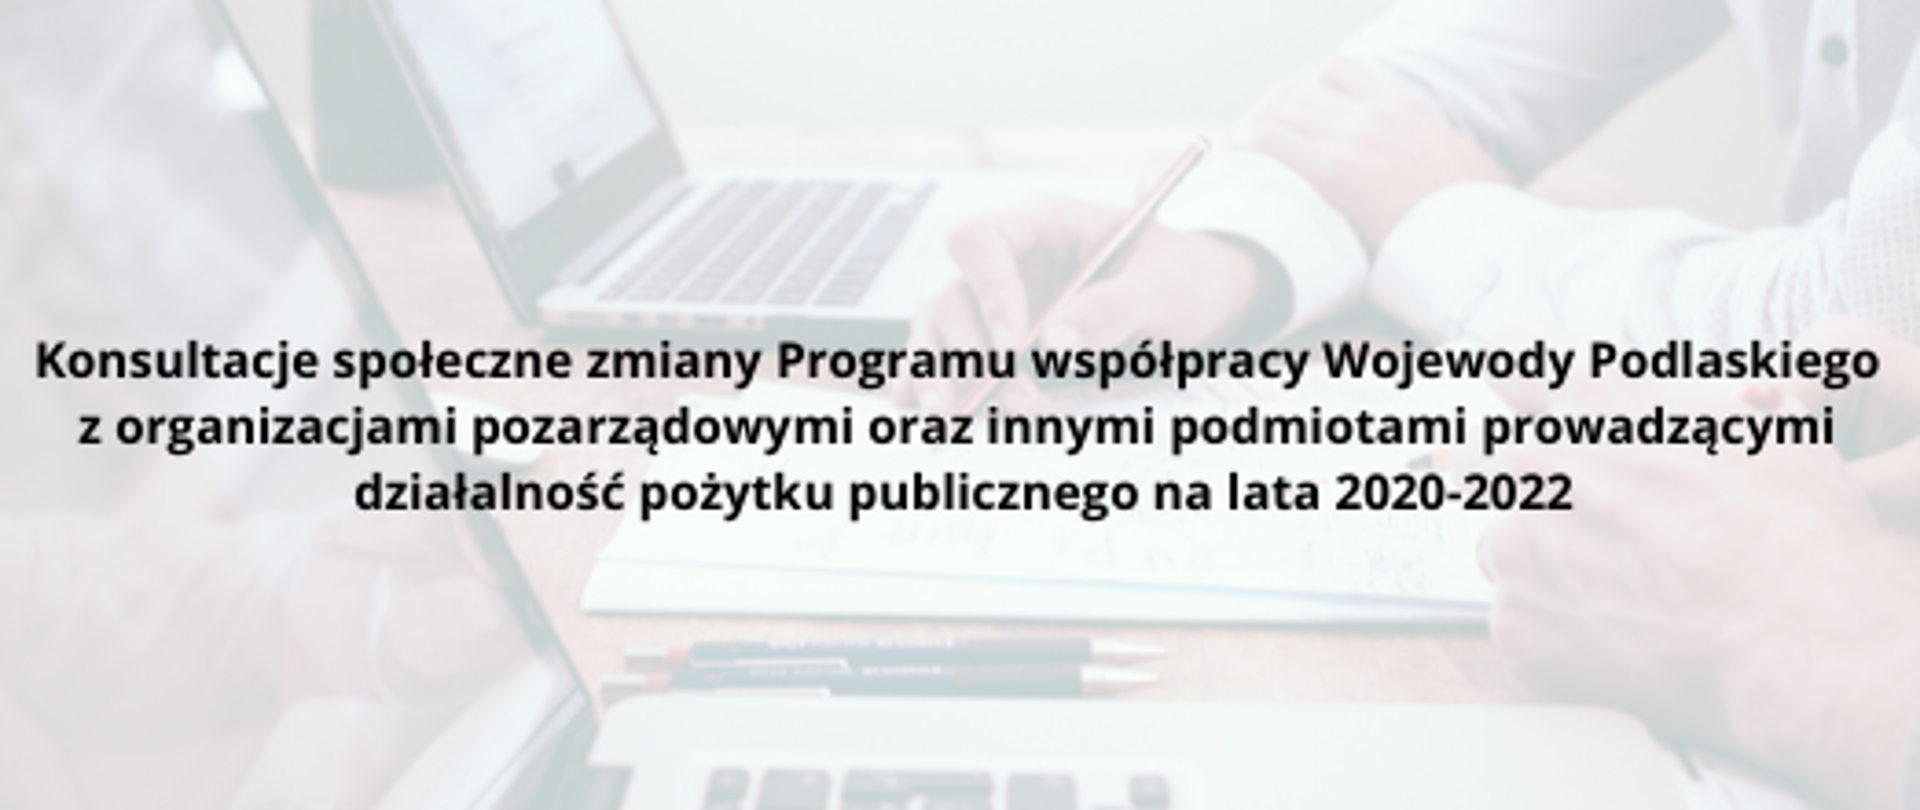 Baner z napisem Konsultacje społeczne zmiany Programu współpracy Wojewody Podlaskiego z organizacjami pozarządowymi oraz innymi podmiotami prowadzącymi działalność pożytku publicznego na lata 2020-2022